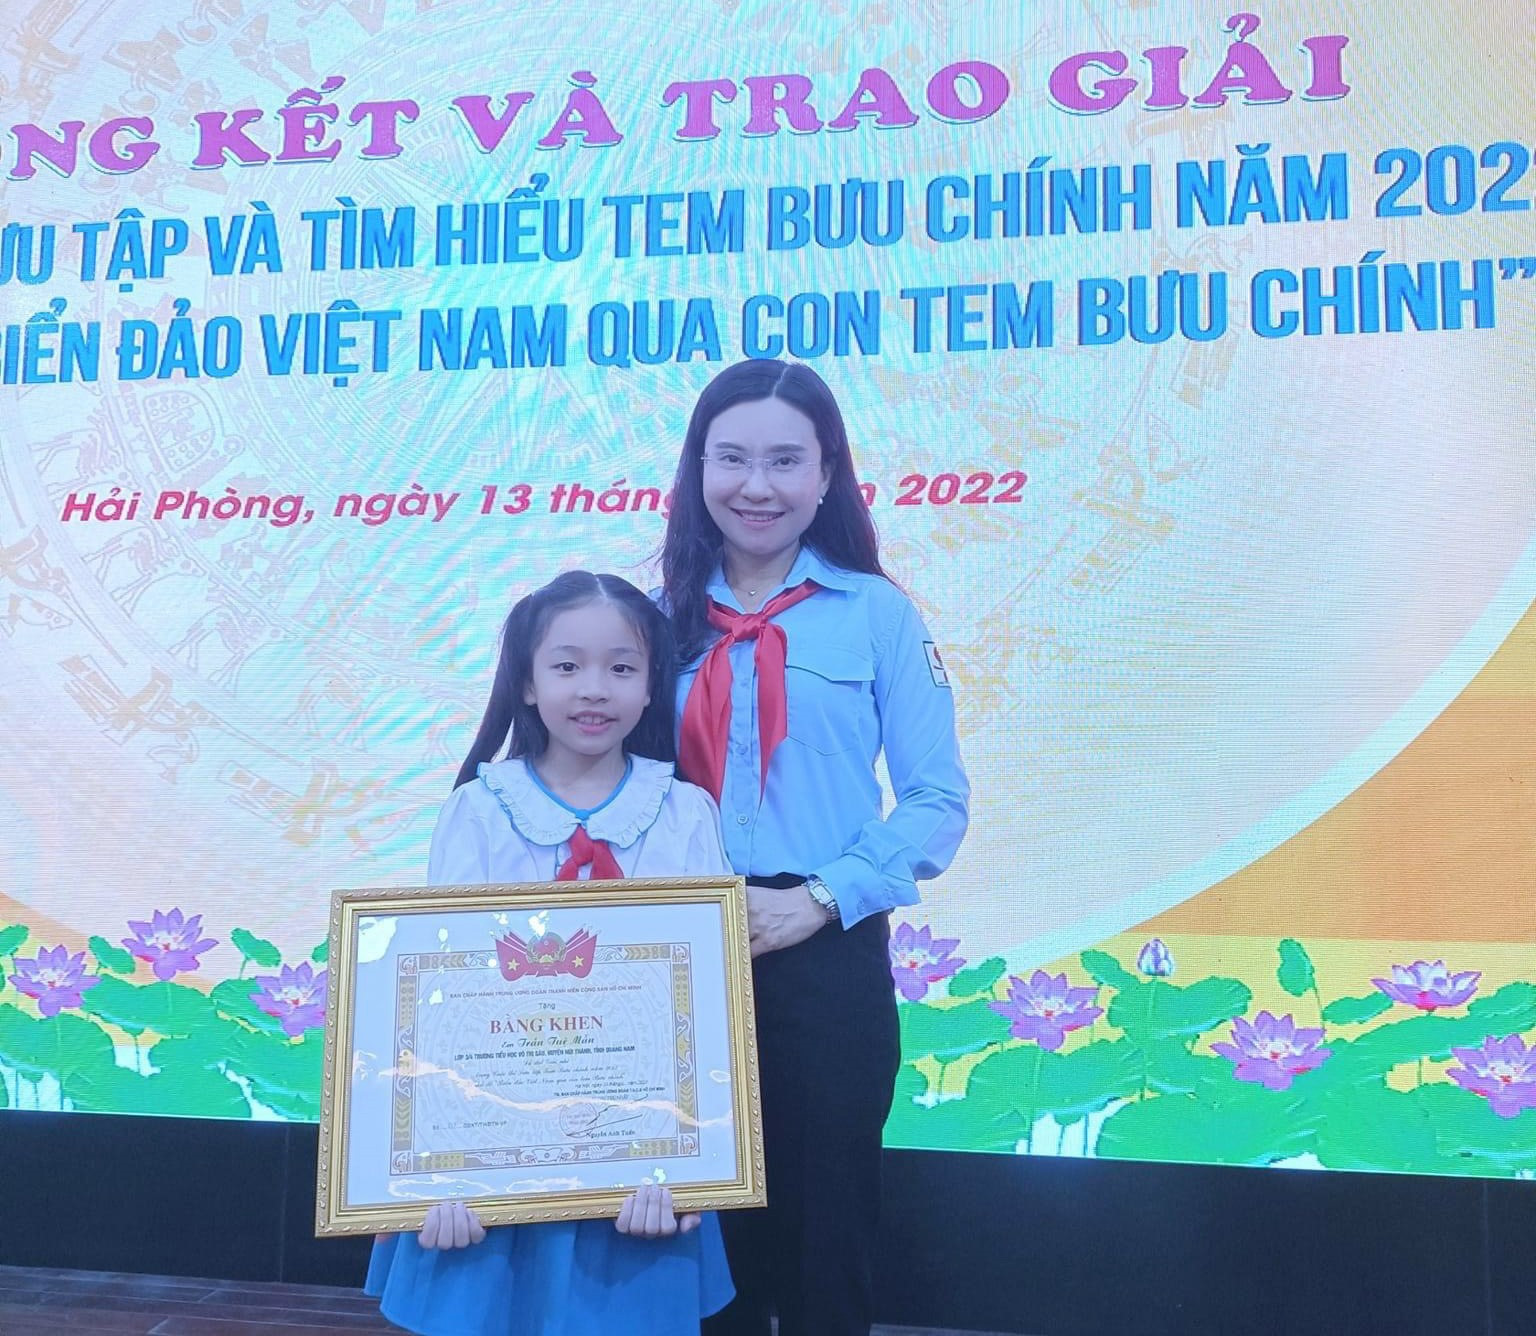 Em Trần Tuệ Mẫn (học sinh lớp 3/4 trường Tiểu học Võ Thị Sáu, Núi Thành) nhận bằng khen giải nhì trong cuộc thi Sưu tập và tìm hiểu tem Bưu chính năm 2022. Ảnh: H.N